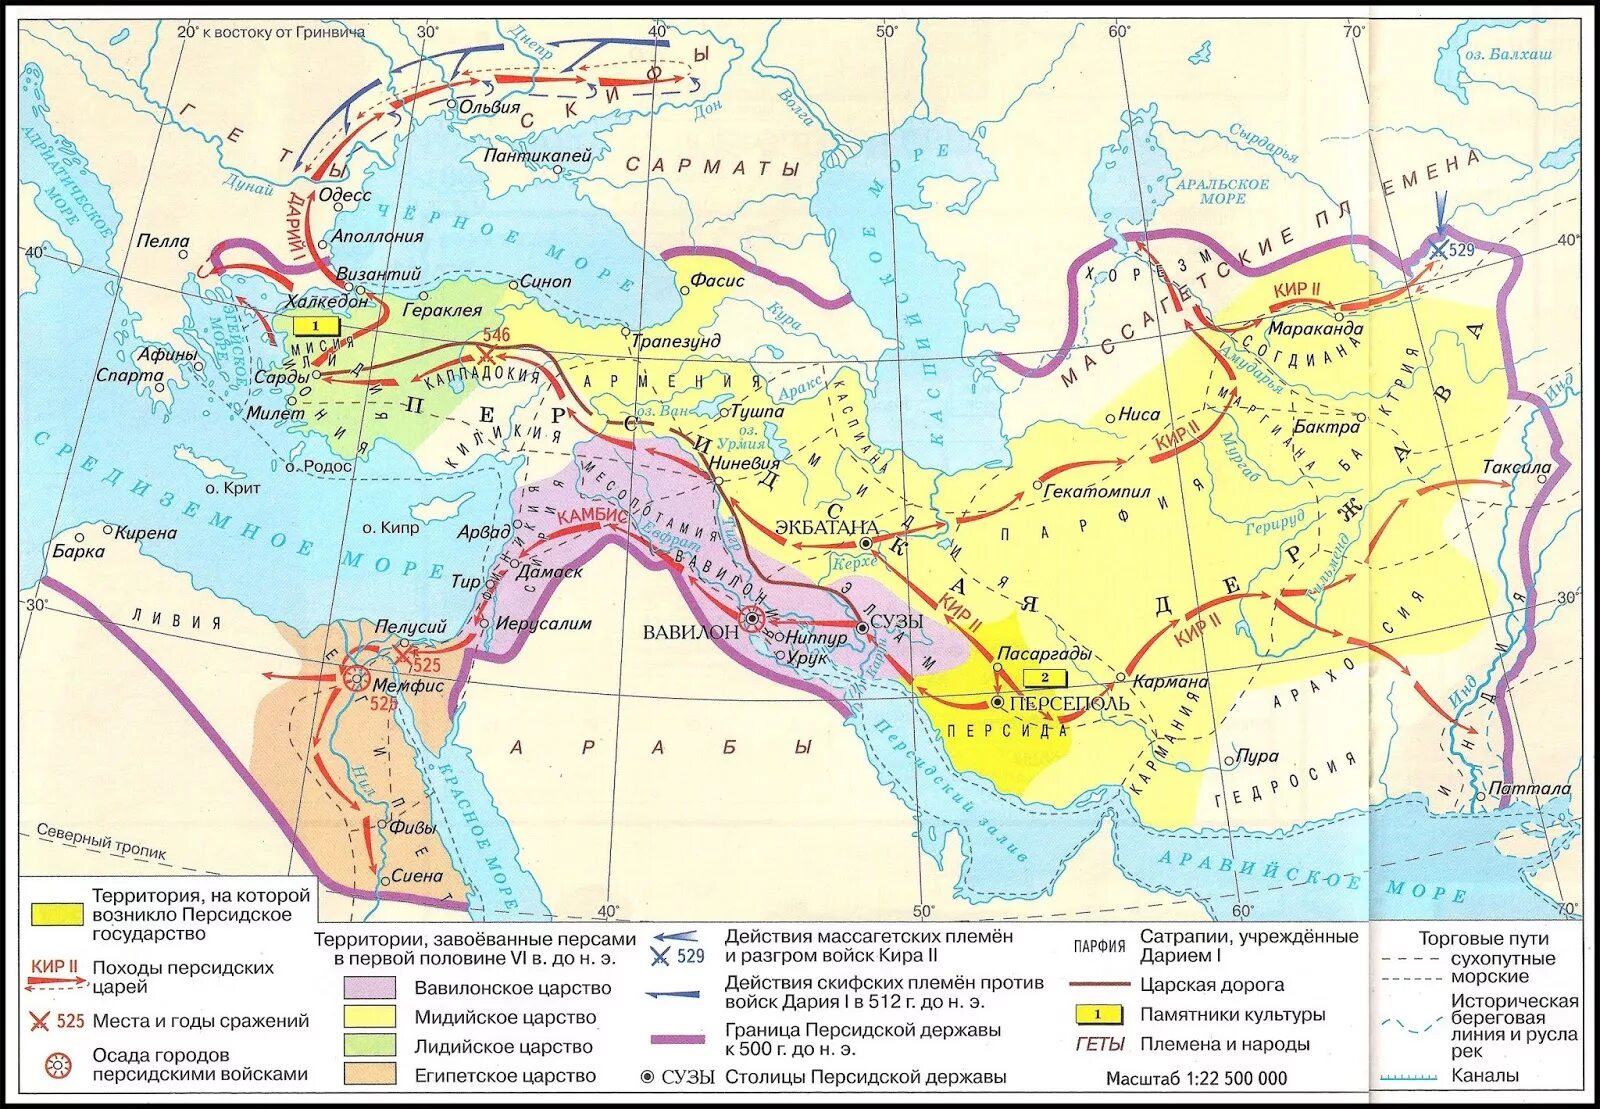 Царская дорога история 5 класс впр. Персидская держава 550-330 гг до н э.